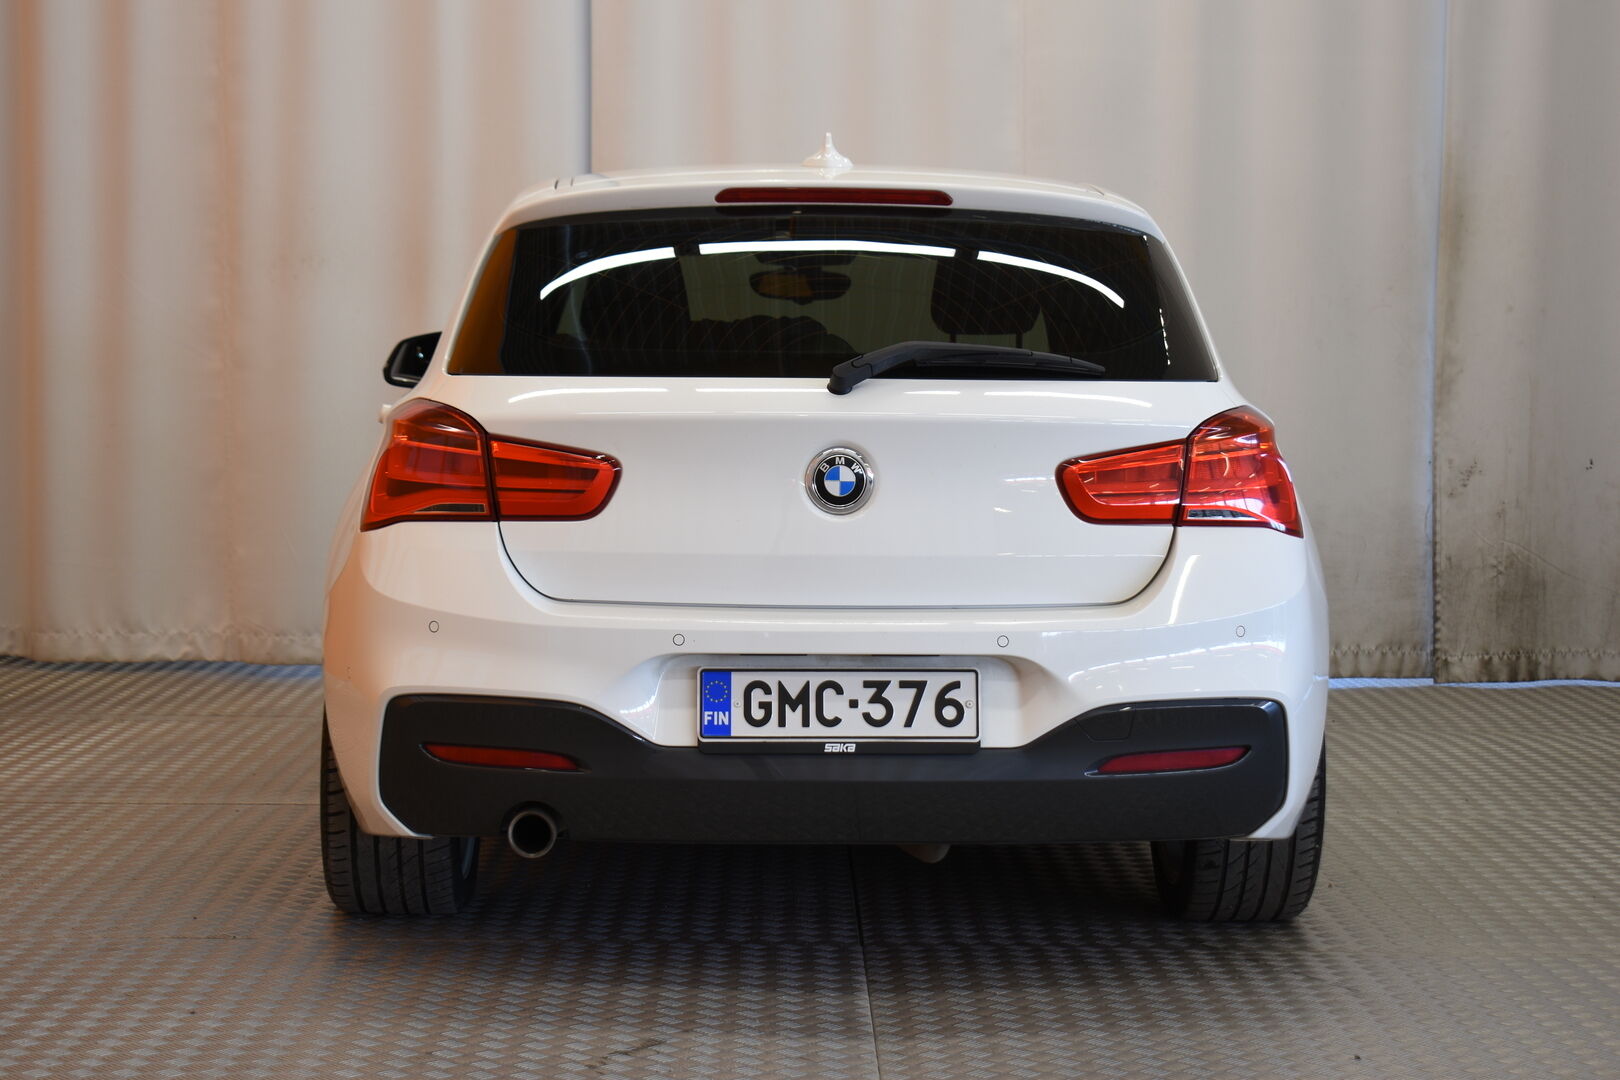 Valkoinen Viistoperä, BMW 116 – GMC-376